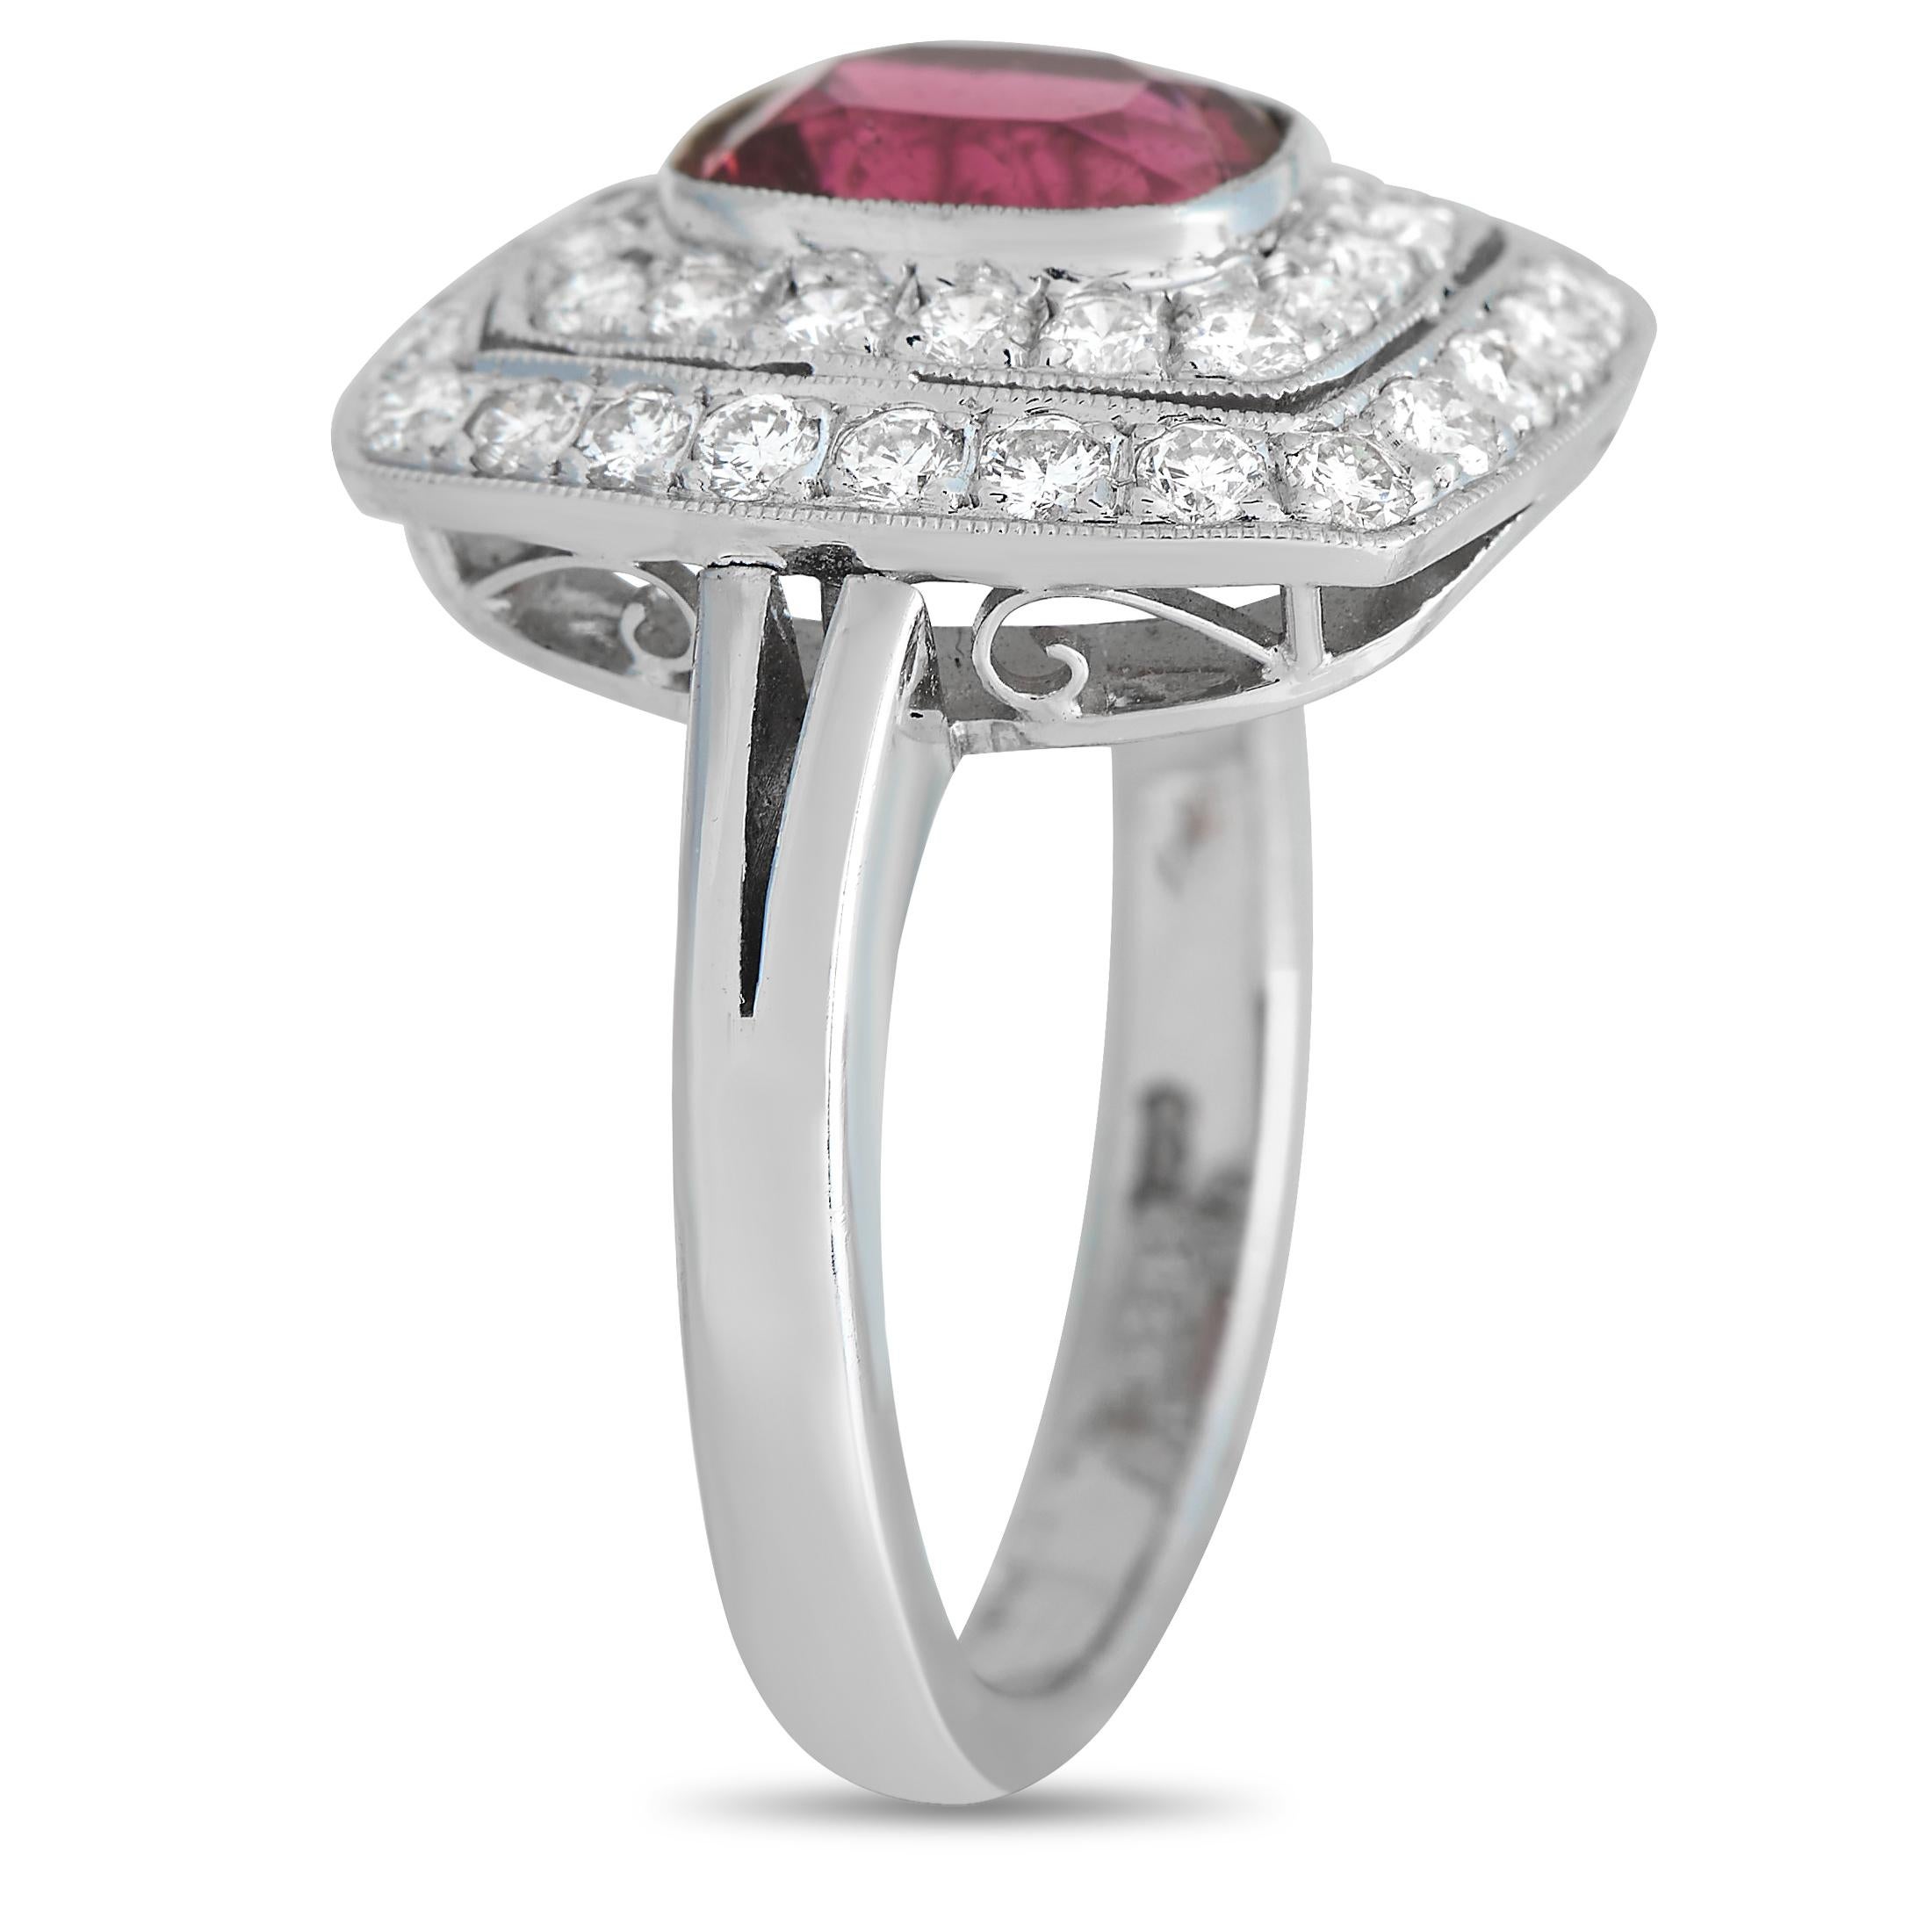 Avec ce bijou au doigt, vous pouvez sans effort faire briller une tenue comme un diamant. Cette bague en or blanc 18 carats, avec un subtil anneau fendu, renferme une rubellite de 1,47 carat - une belle tourmaline rouge-rosé. La pierre précieuse est